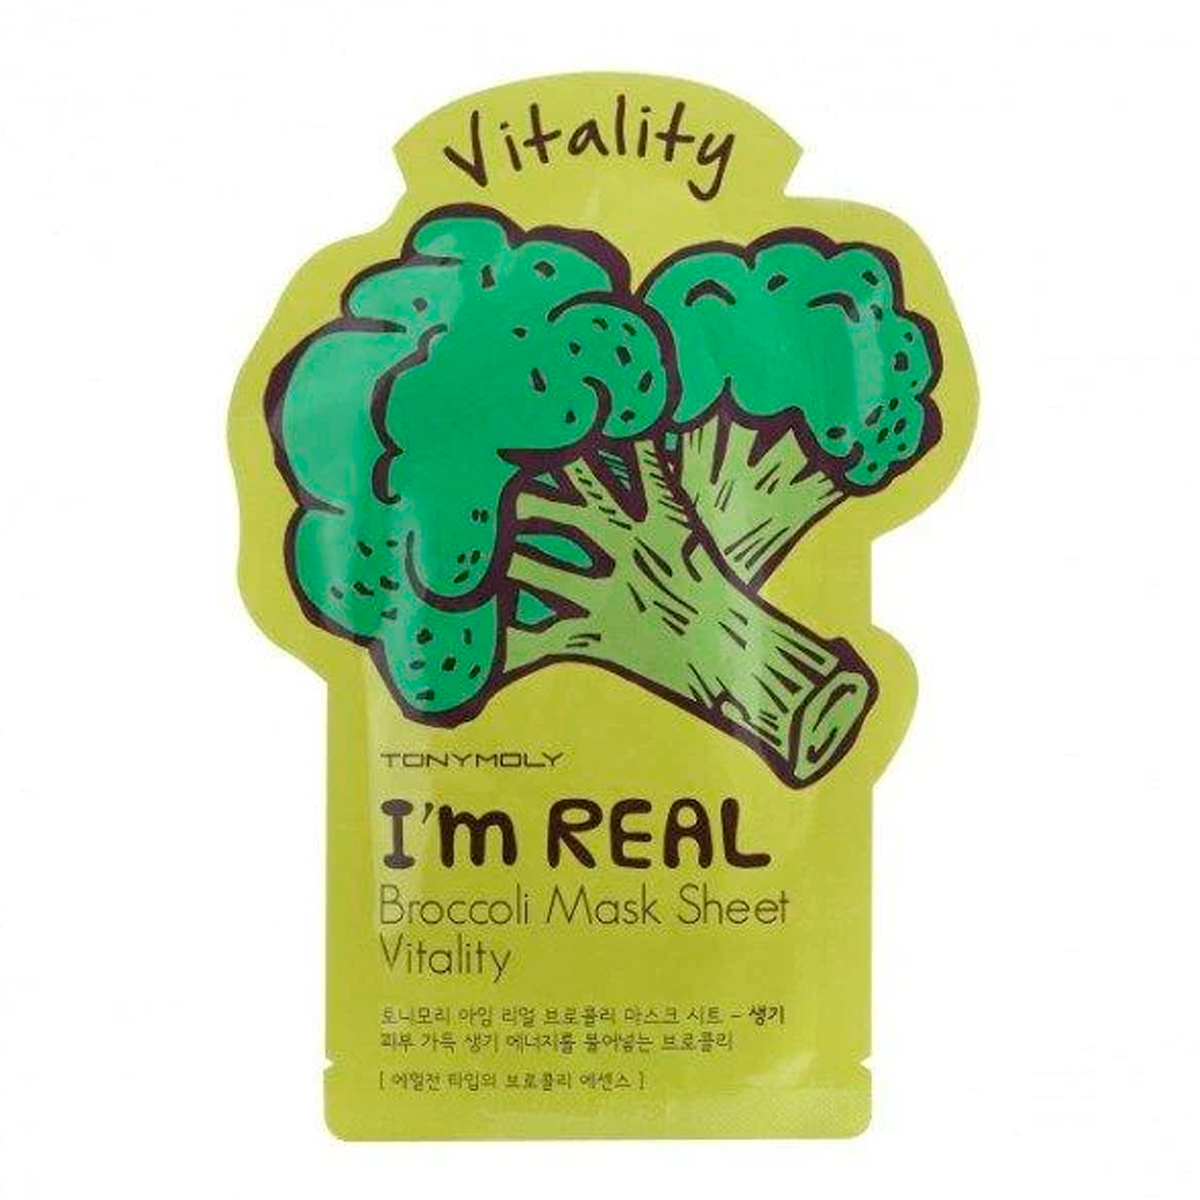 Broccoli I'm Real